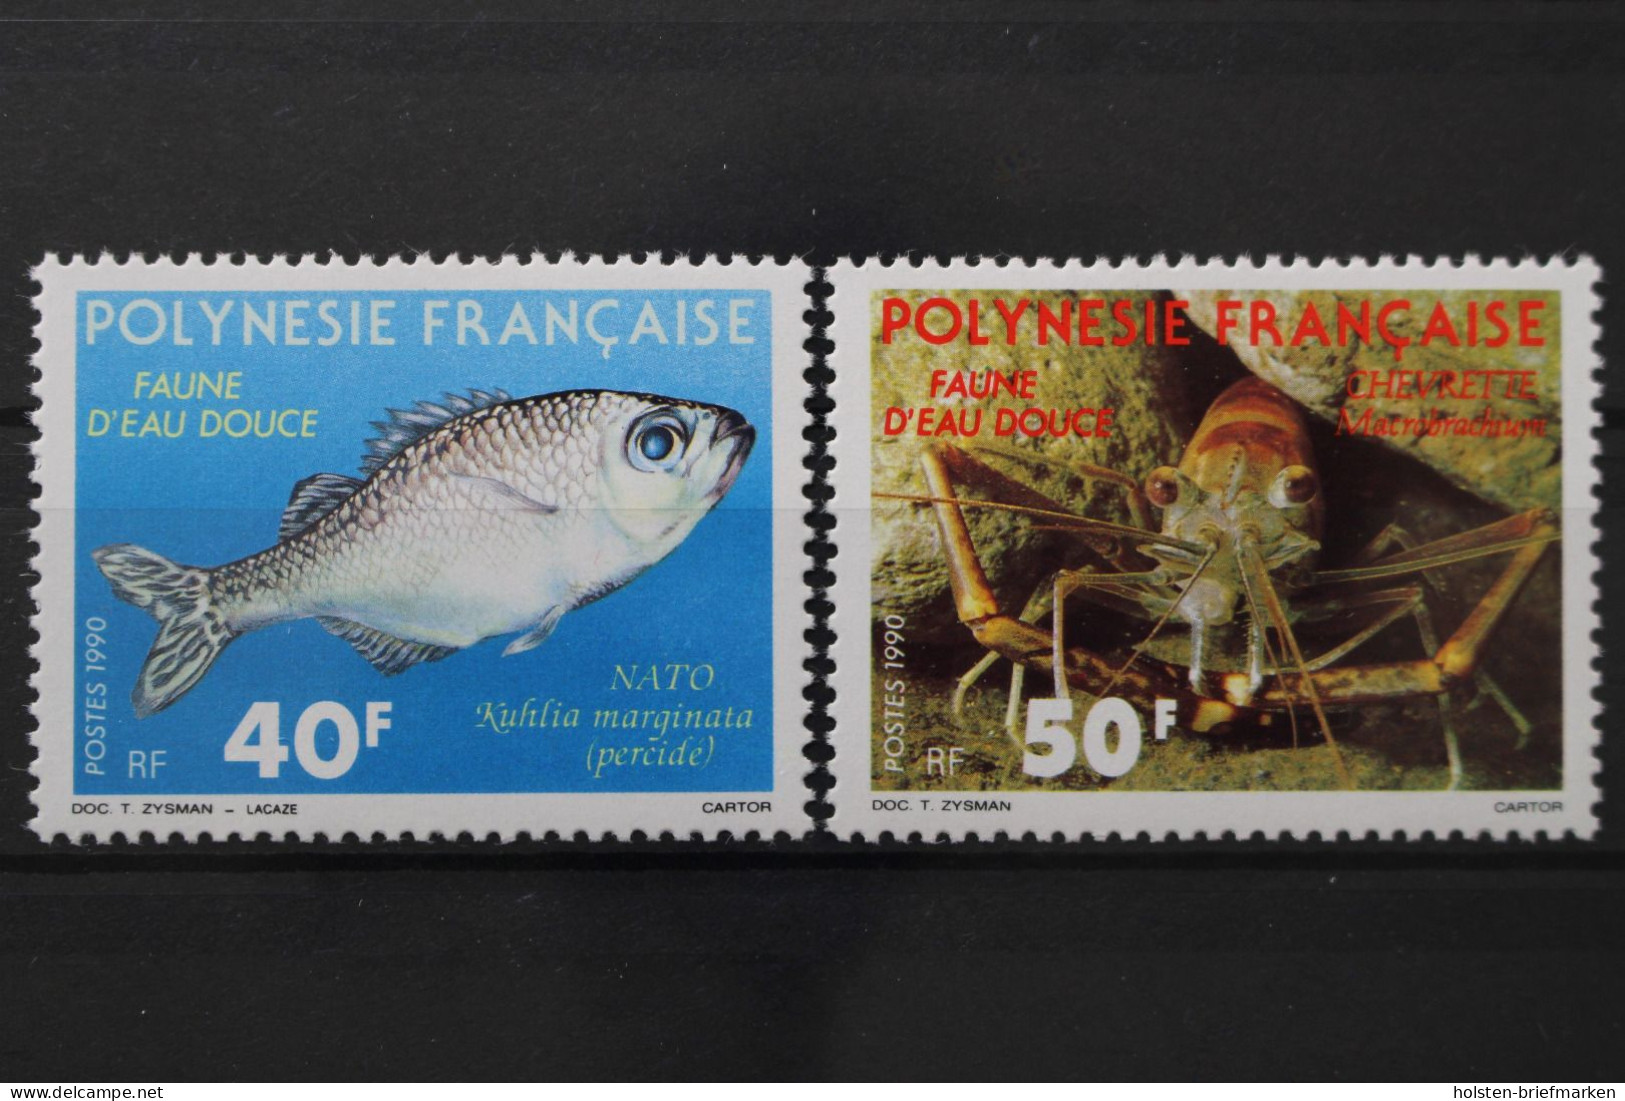 Französisch-Polynesien, MiNr. 551-552, Postfrisch - Ungebraucht